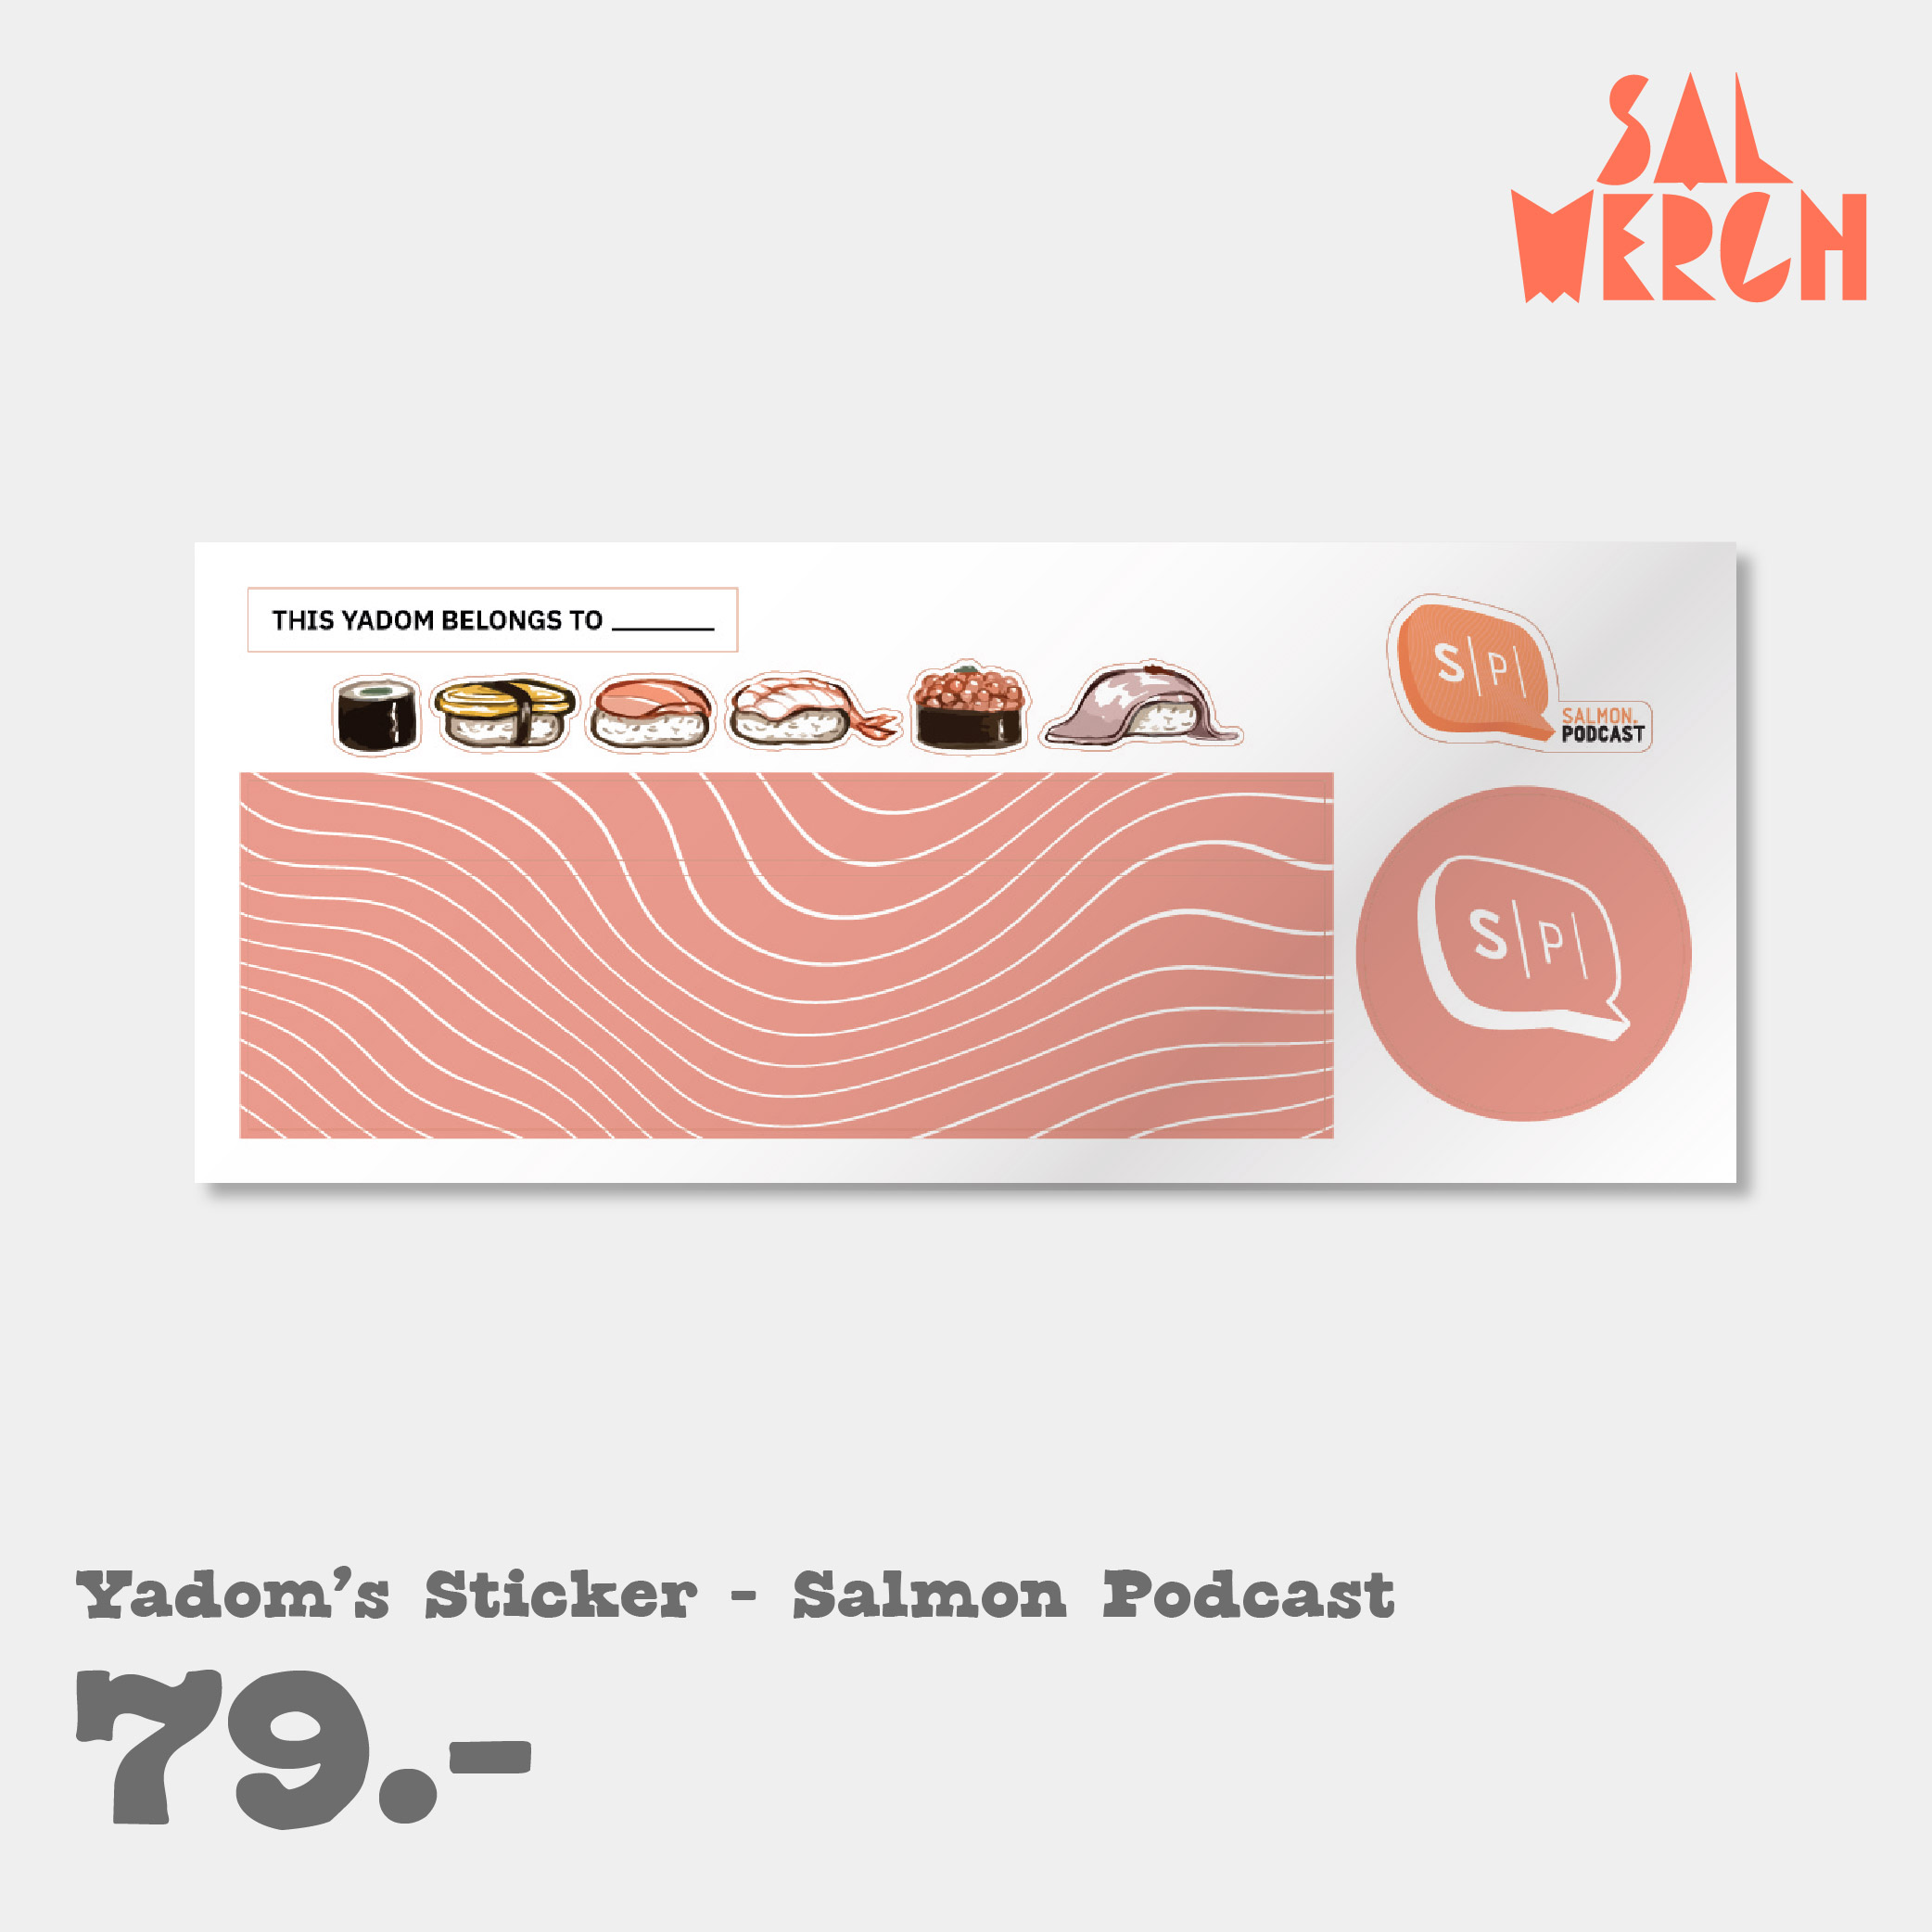 YADOM'S STICKER - SALMON PODCAST